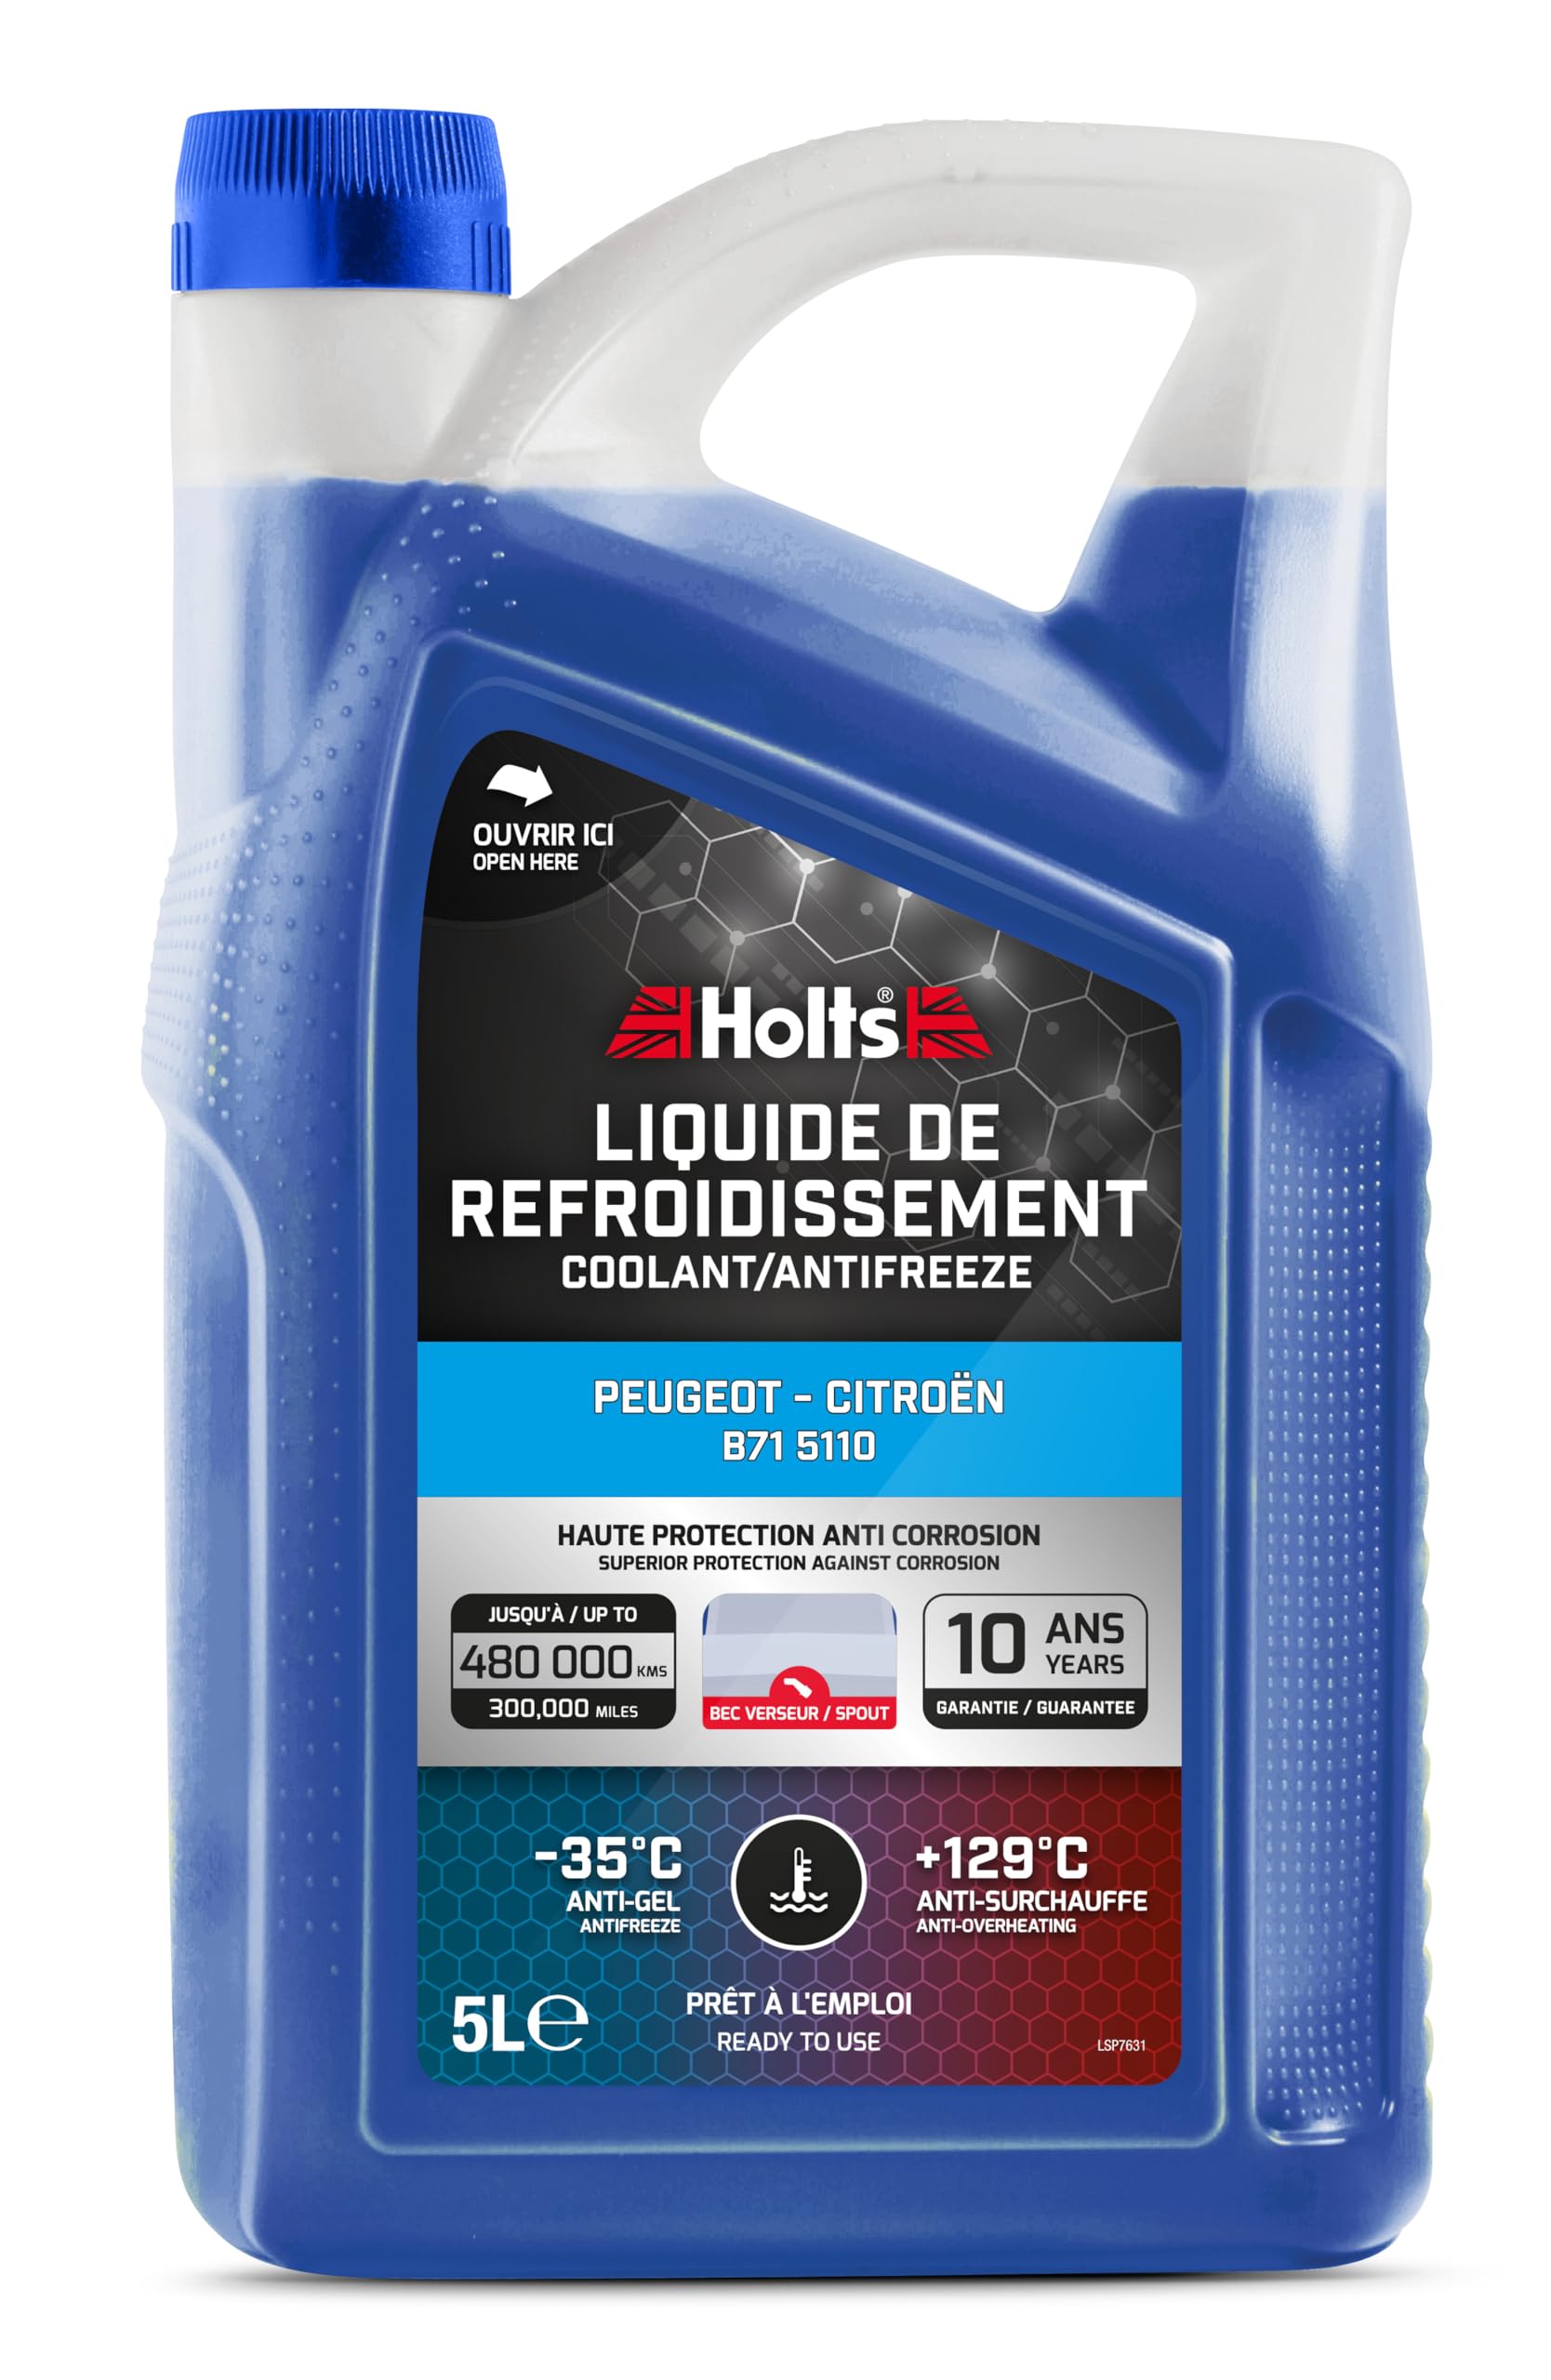 Holts HAFR0002B kühlmittel, Kühlerfrostschutz für Auto, B71 5110 Peugeot Citroen,10 Jahre, 480k km, kühlflüssigkeit Motor Auto bis -35°C, blau, 5 Liter von Holts